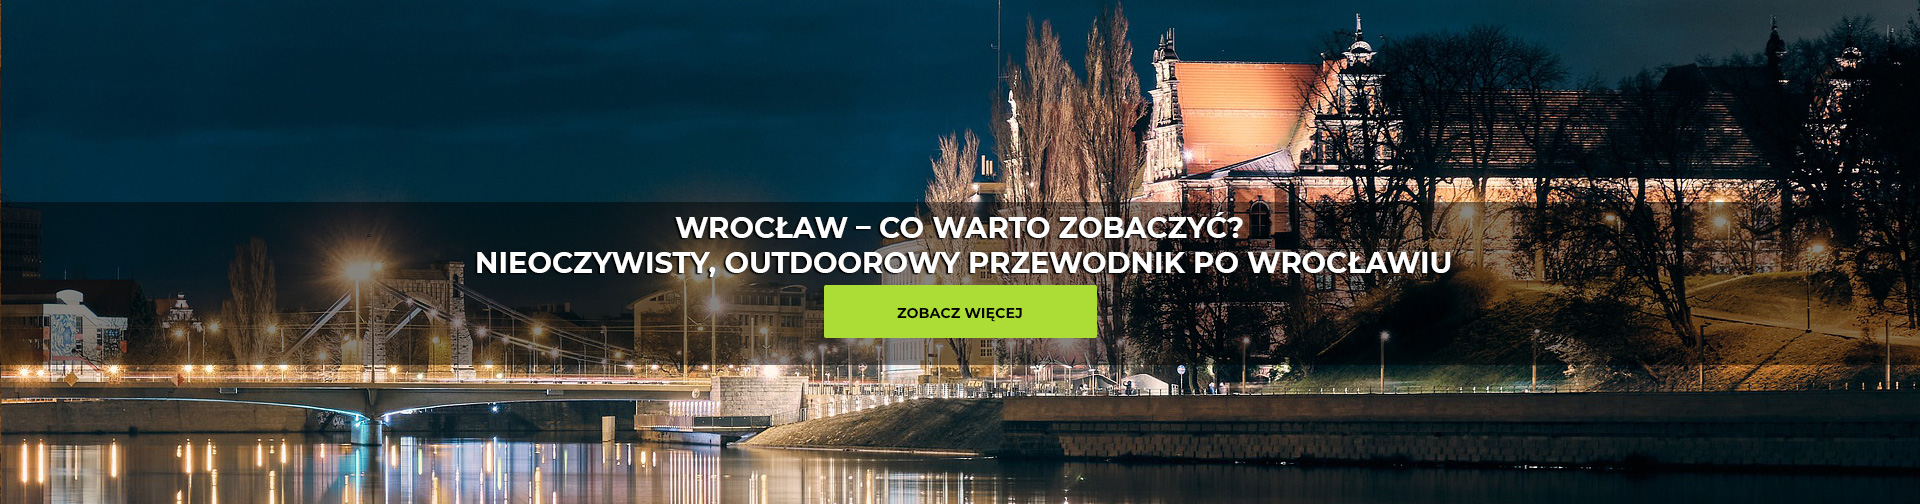 Wrocław – co warto zobaczyć? Nieoczywisty, outdoorowy przewodnik po Wrocławiu